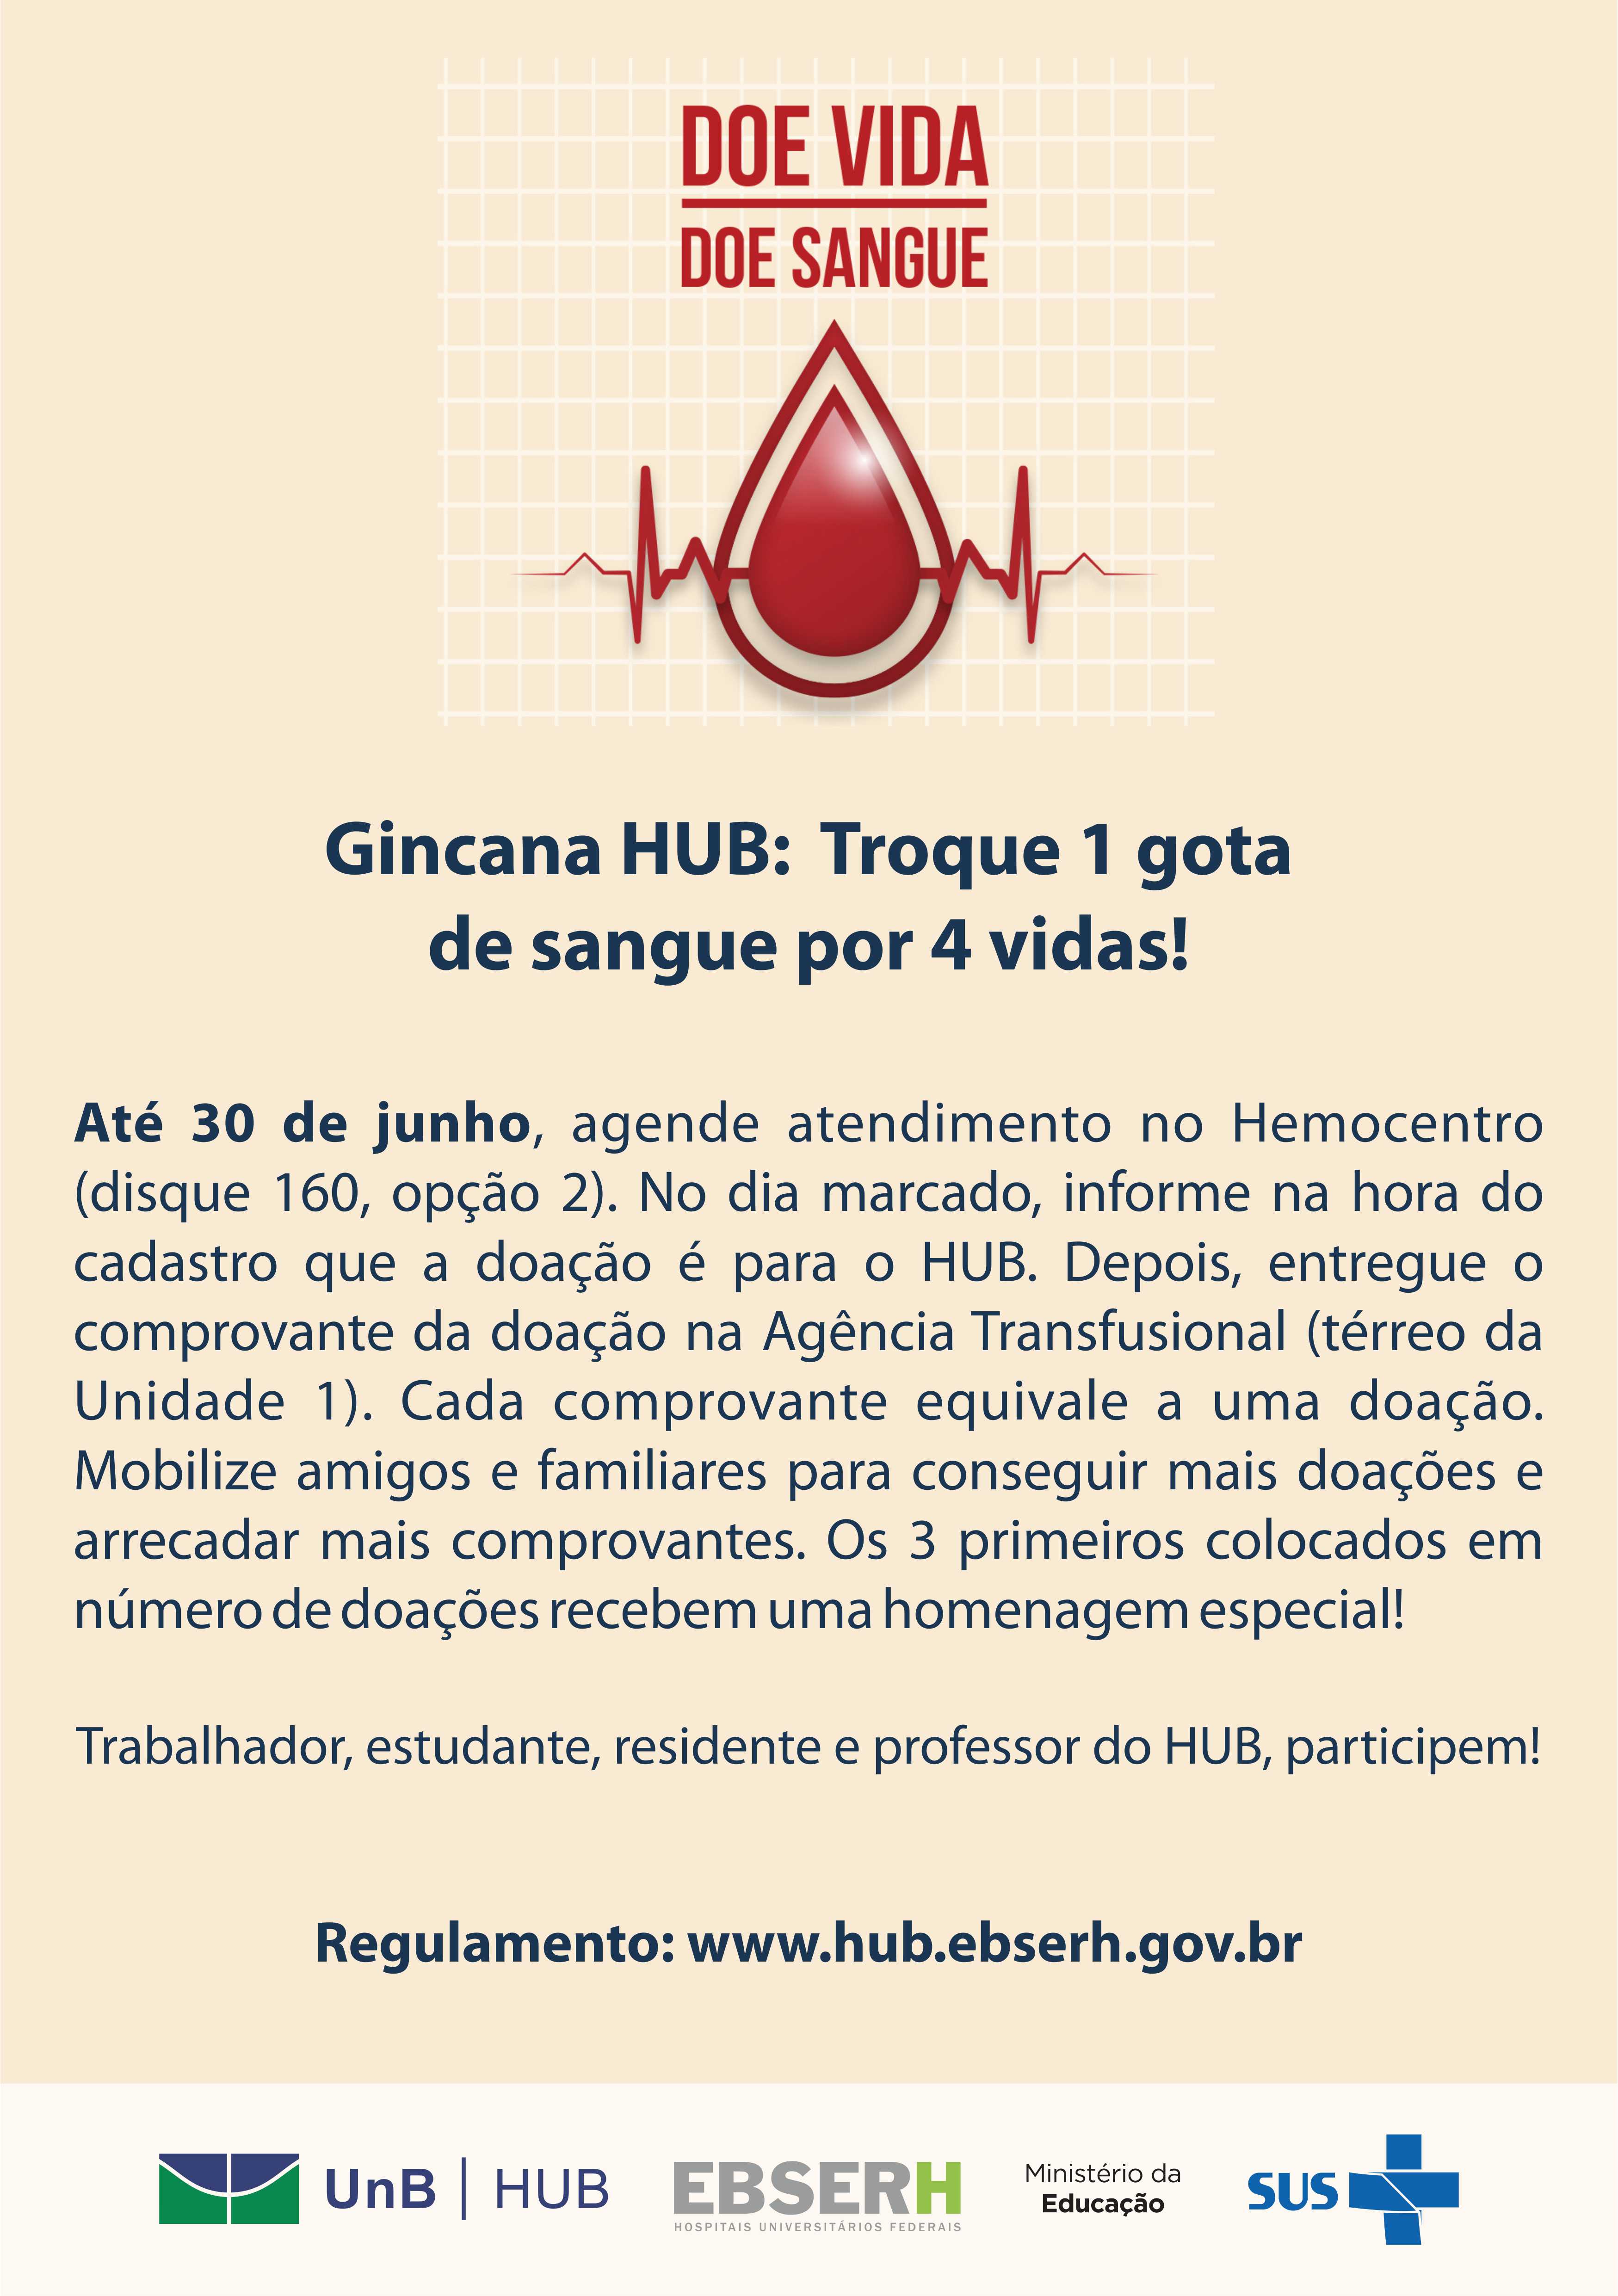 Gincana HUB de doação de sangue